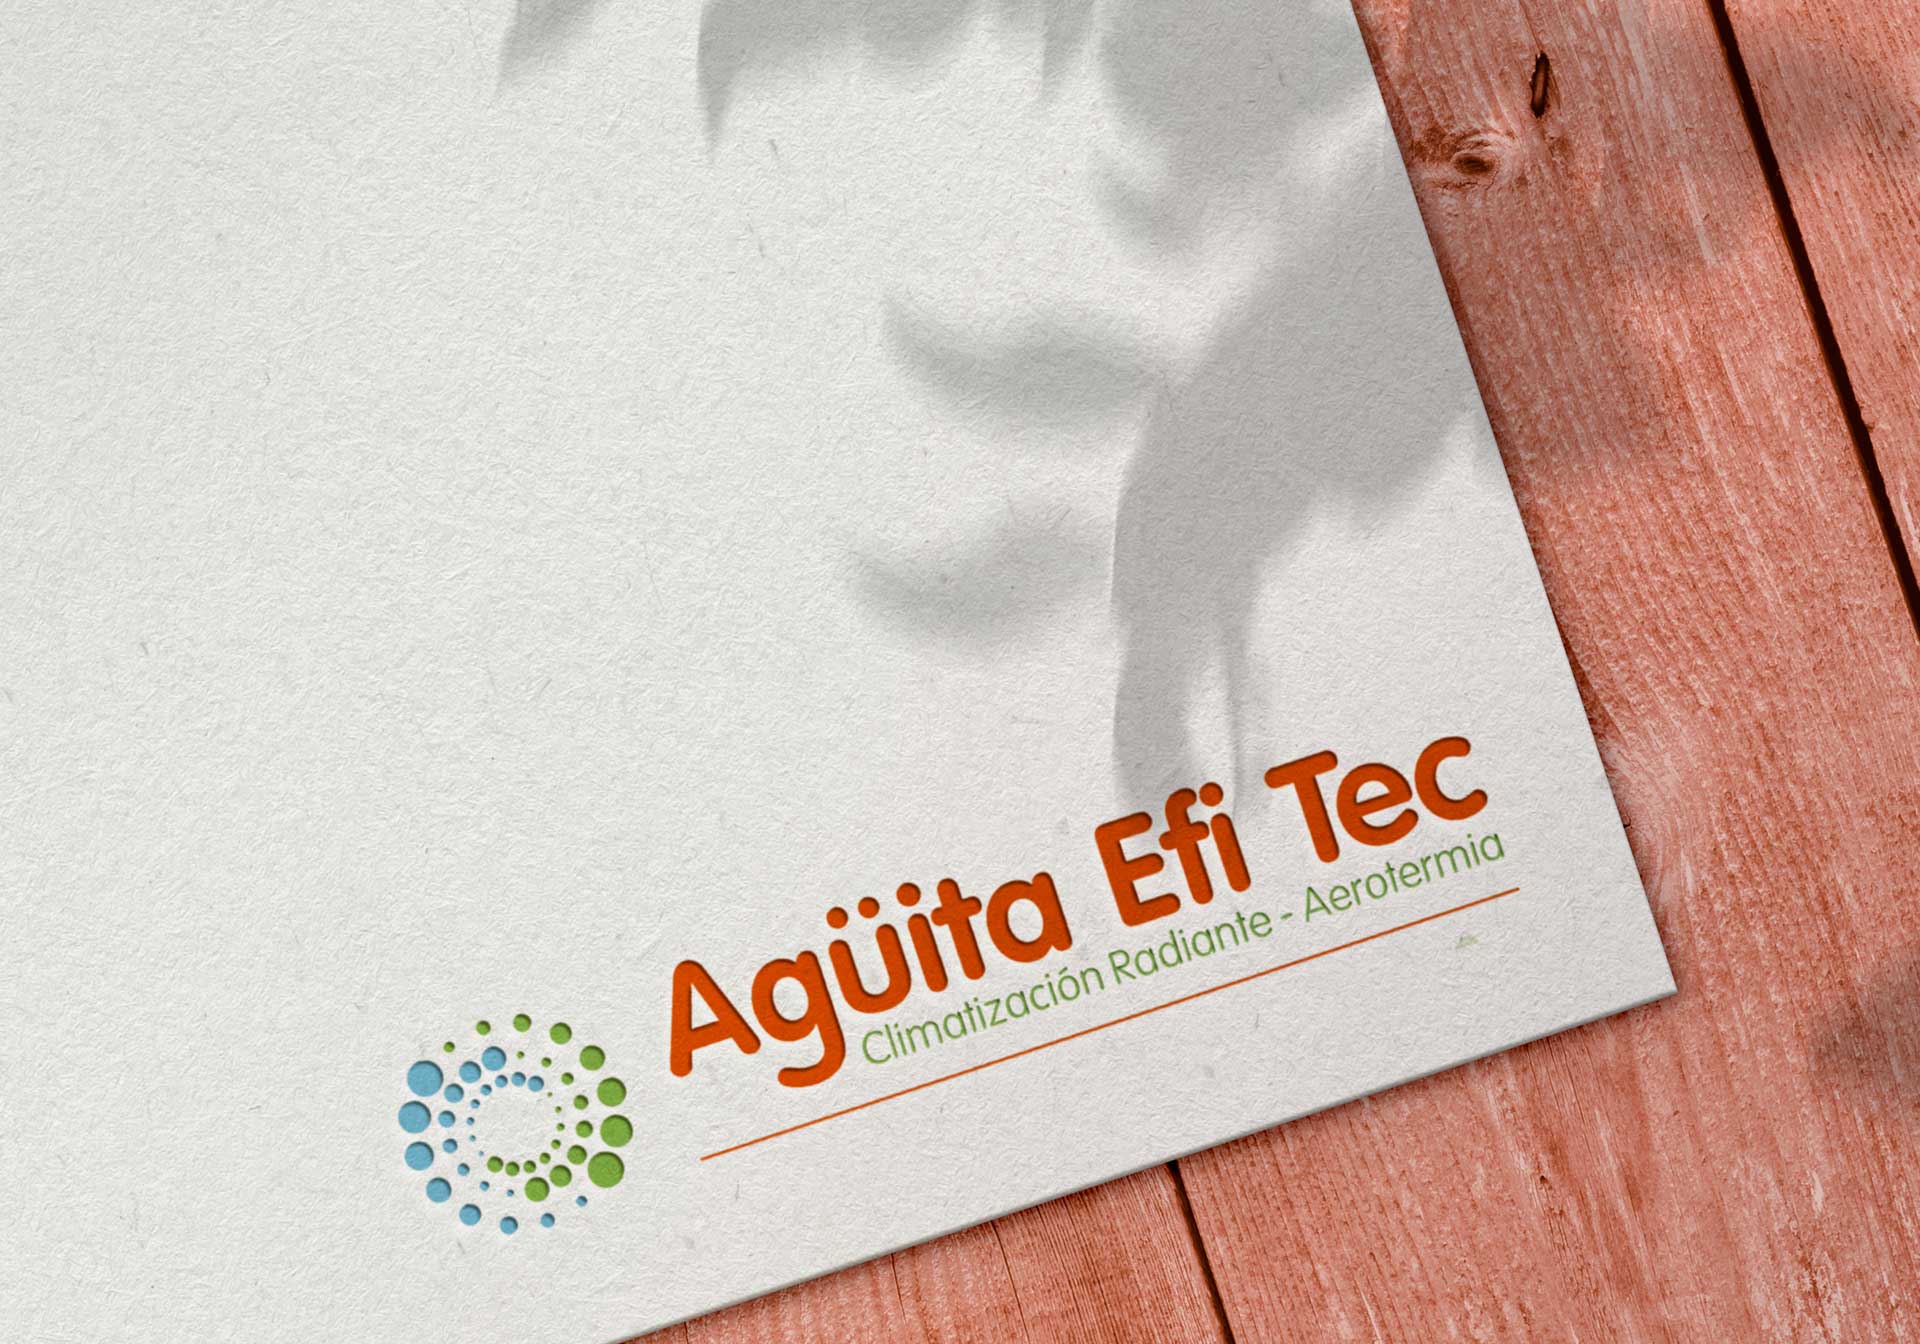 Barnding logo Aguitta Efi Tec